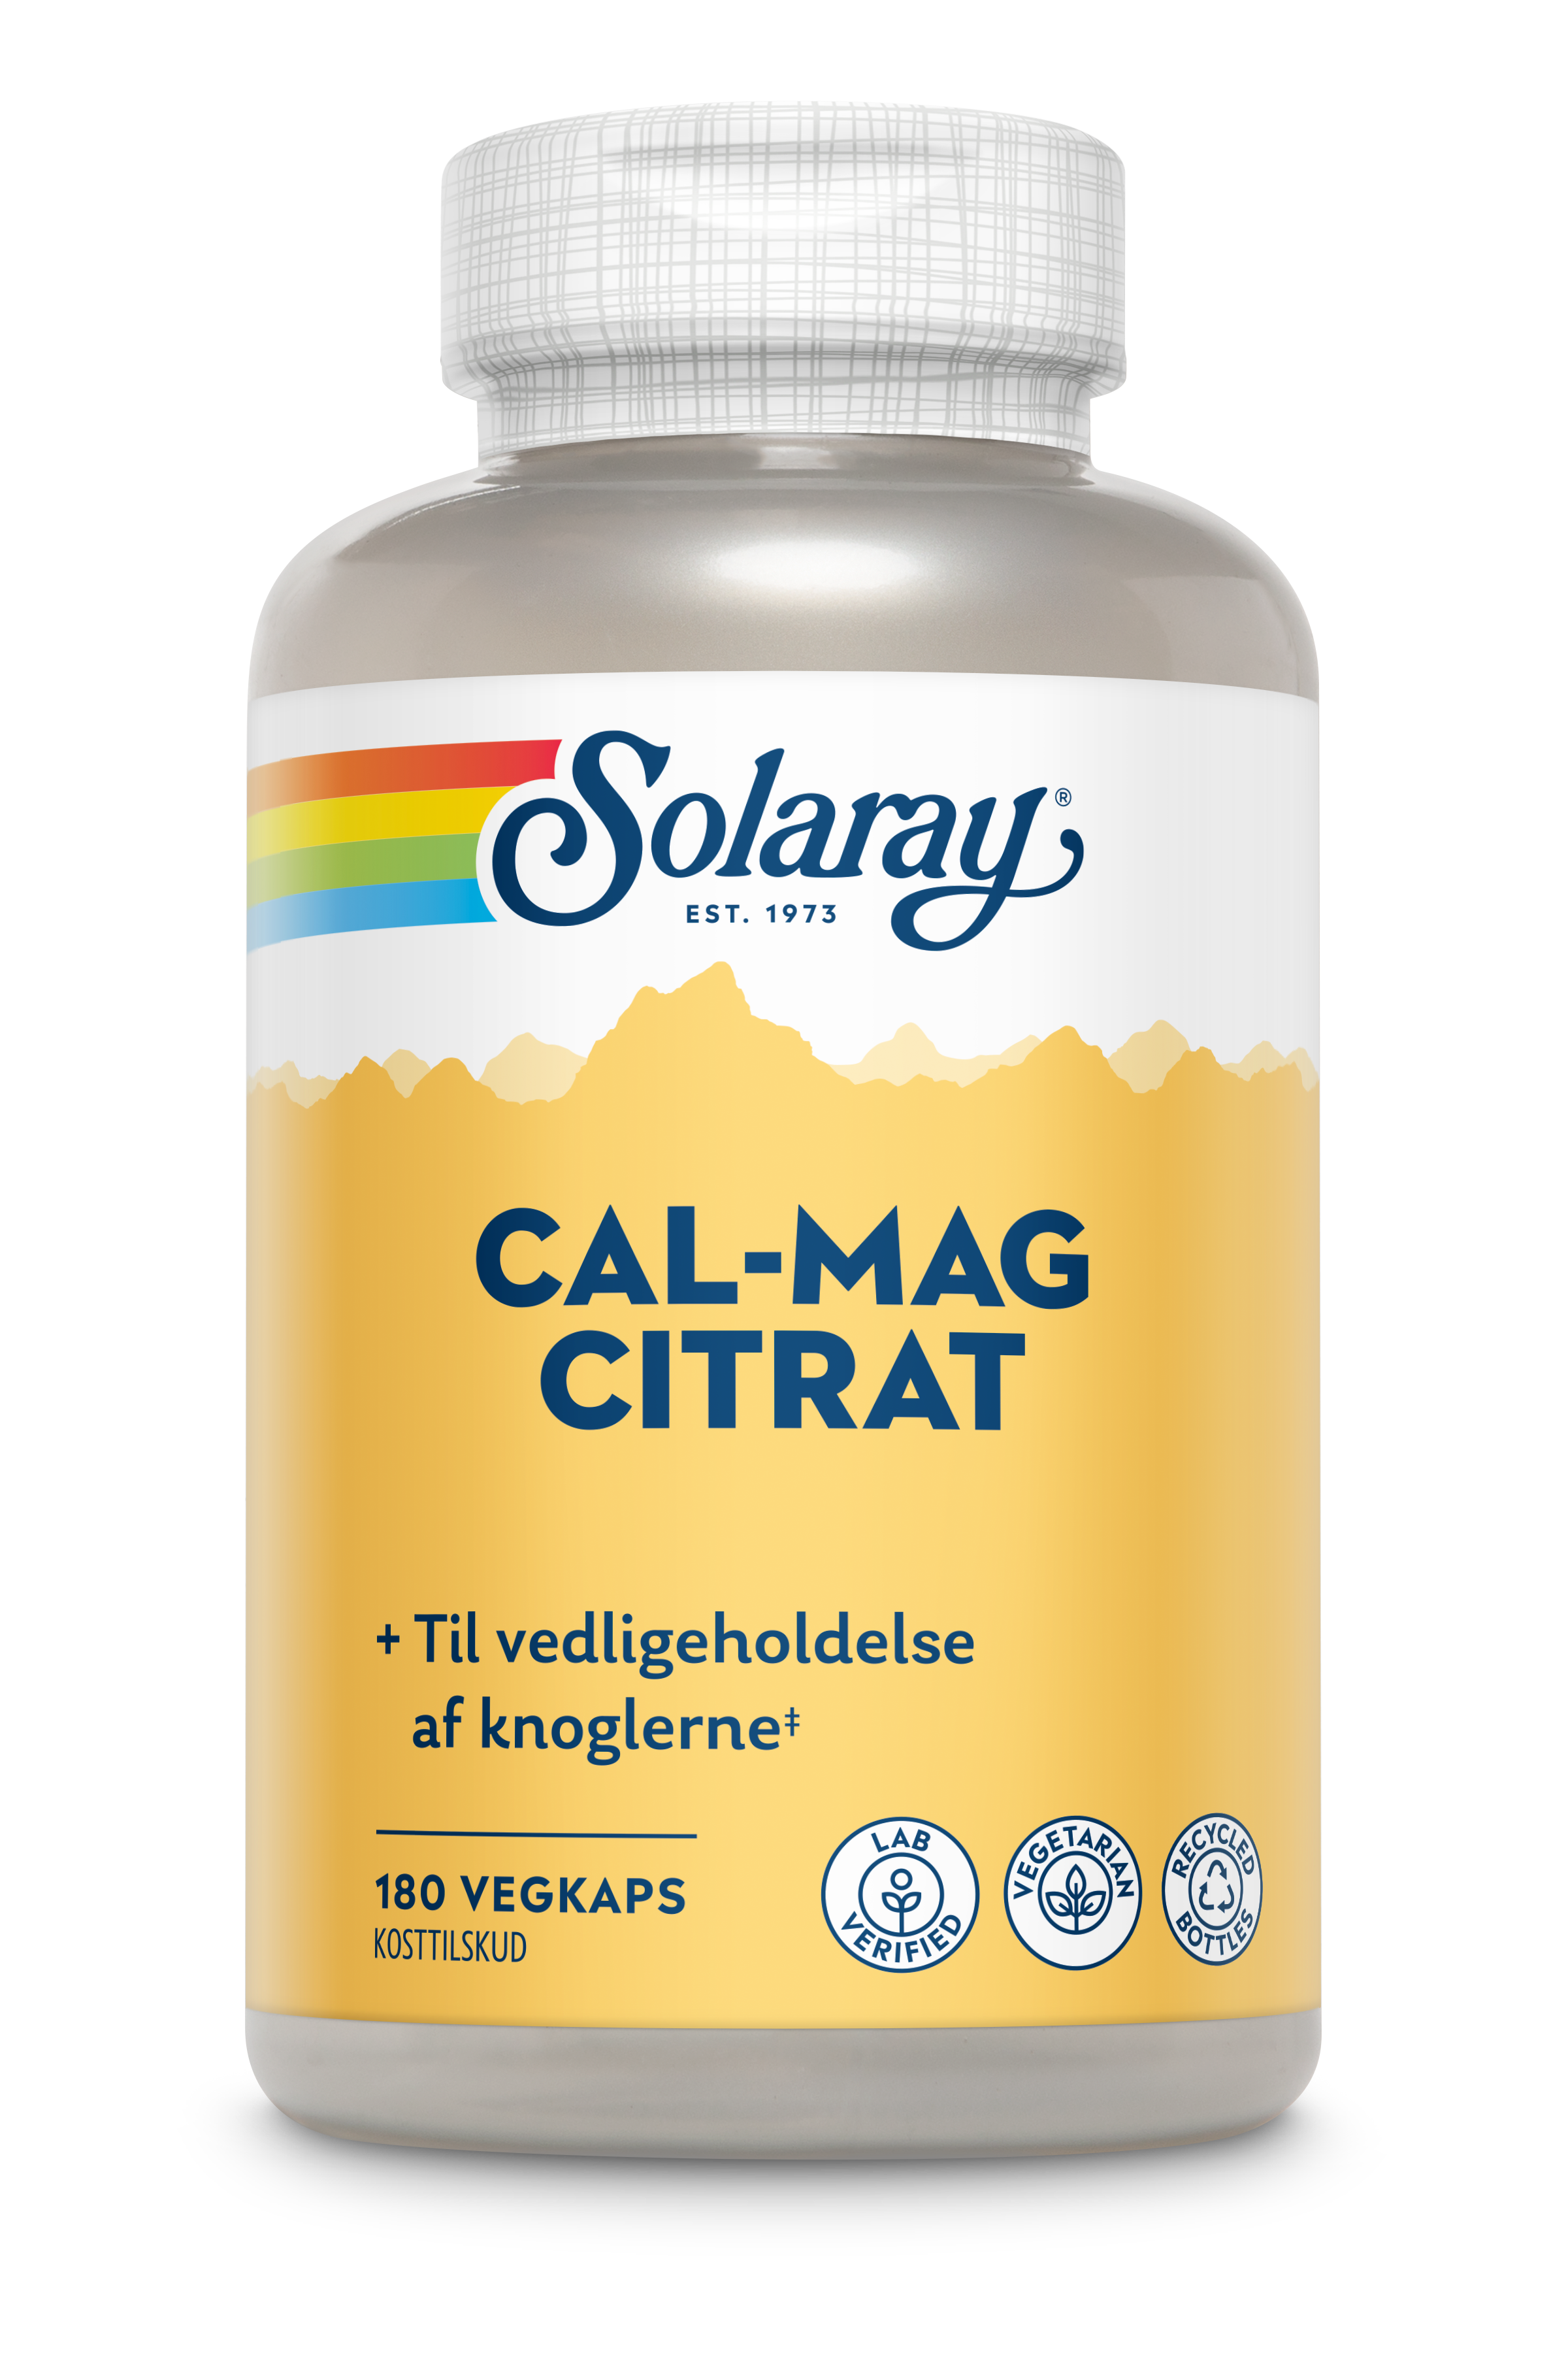 Cal-Mag Citrat produktfoto